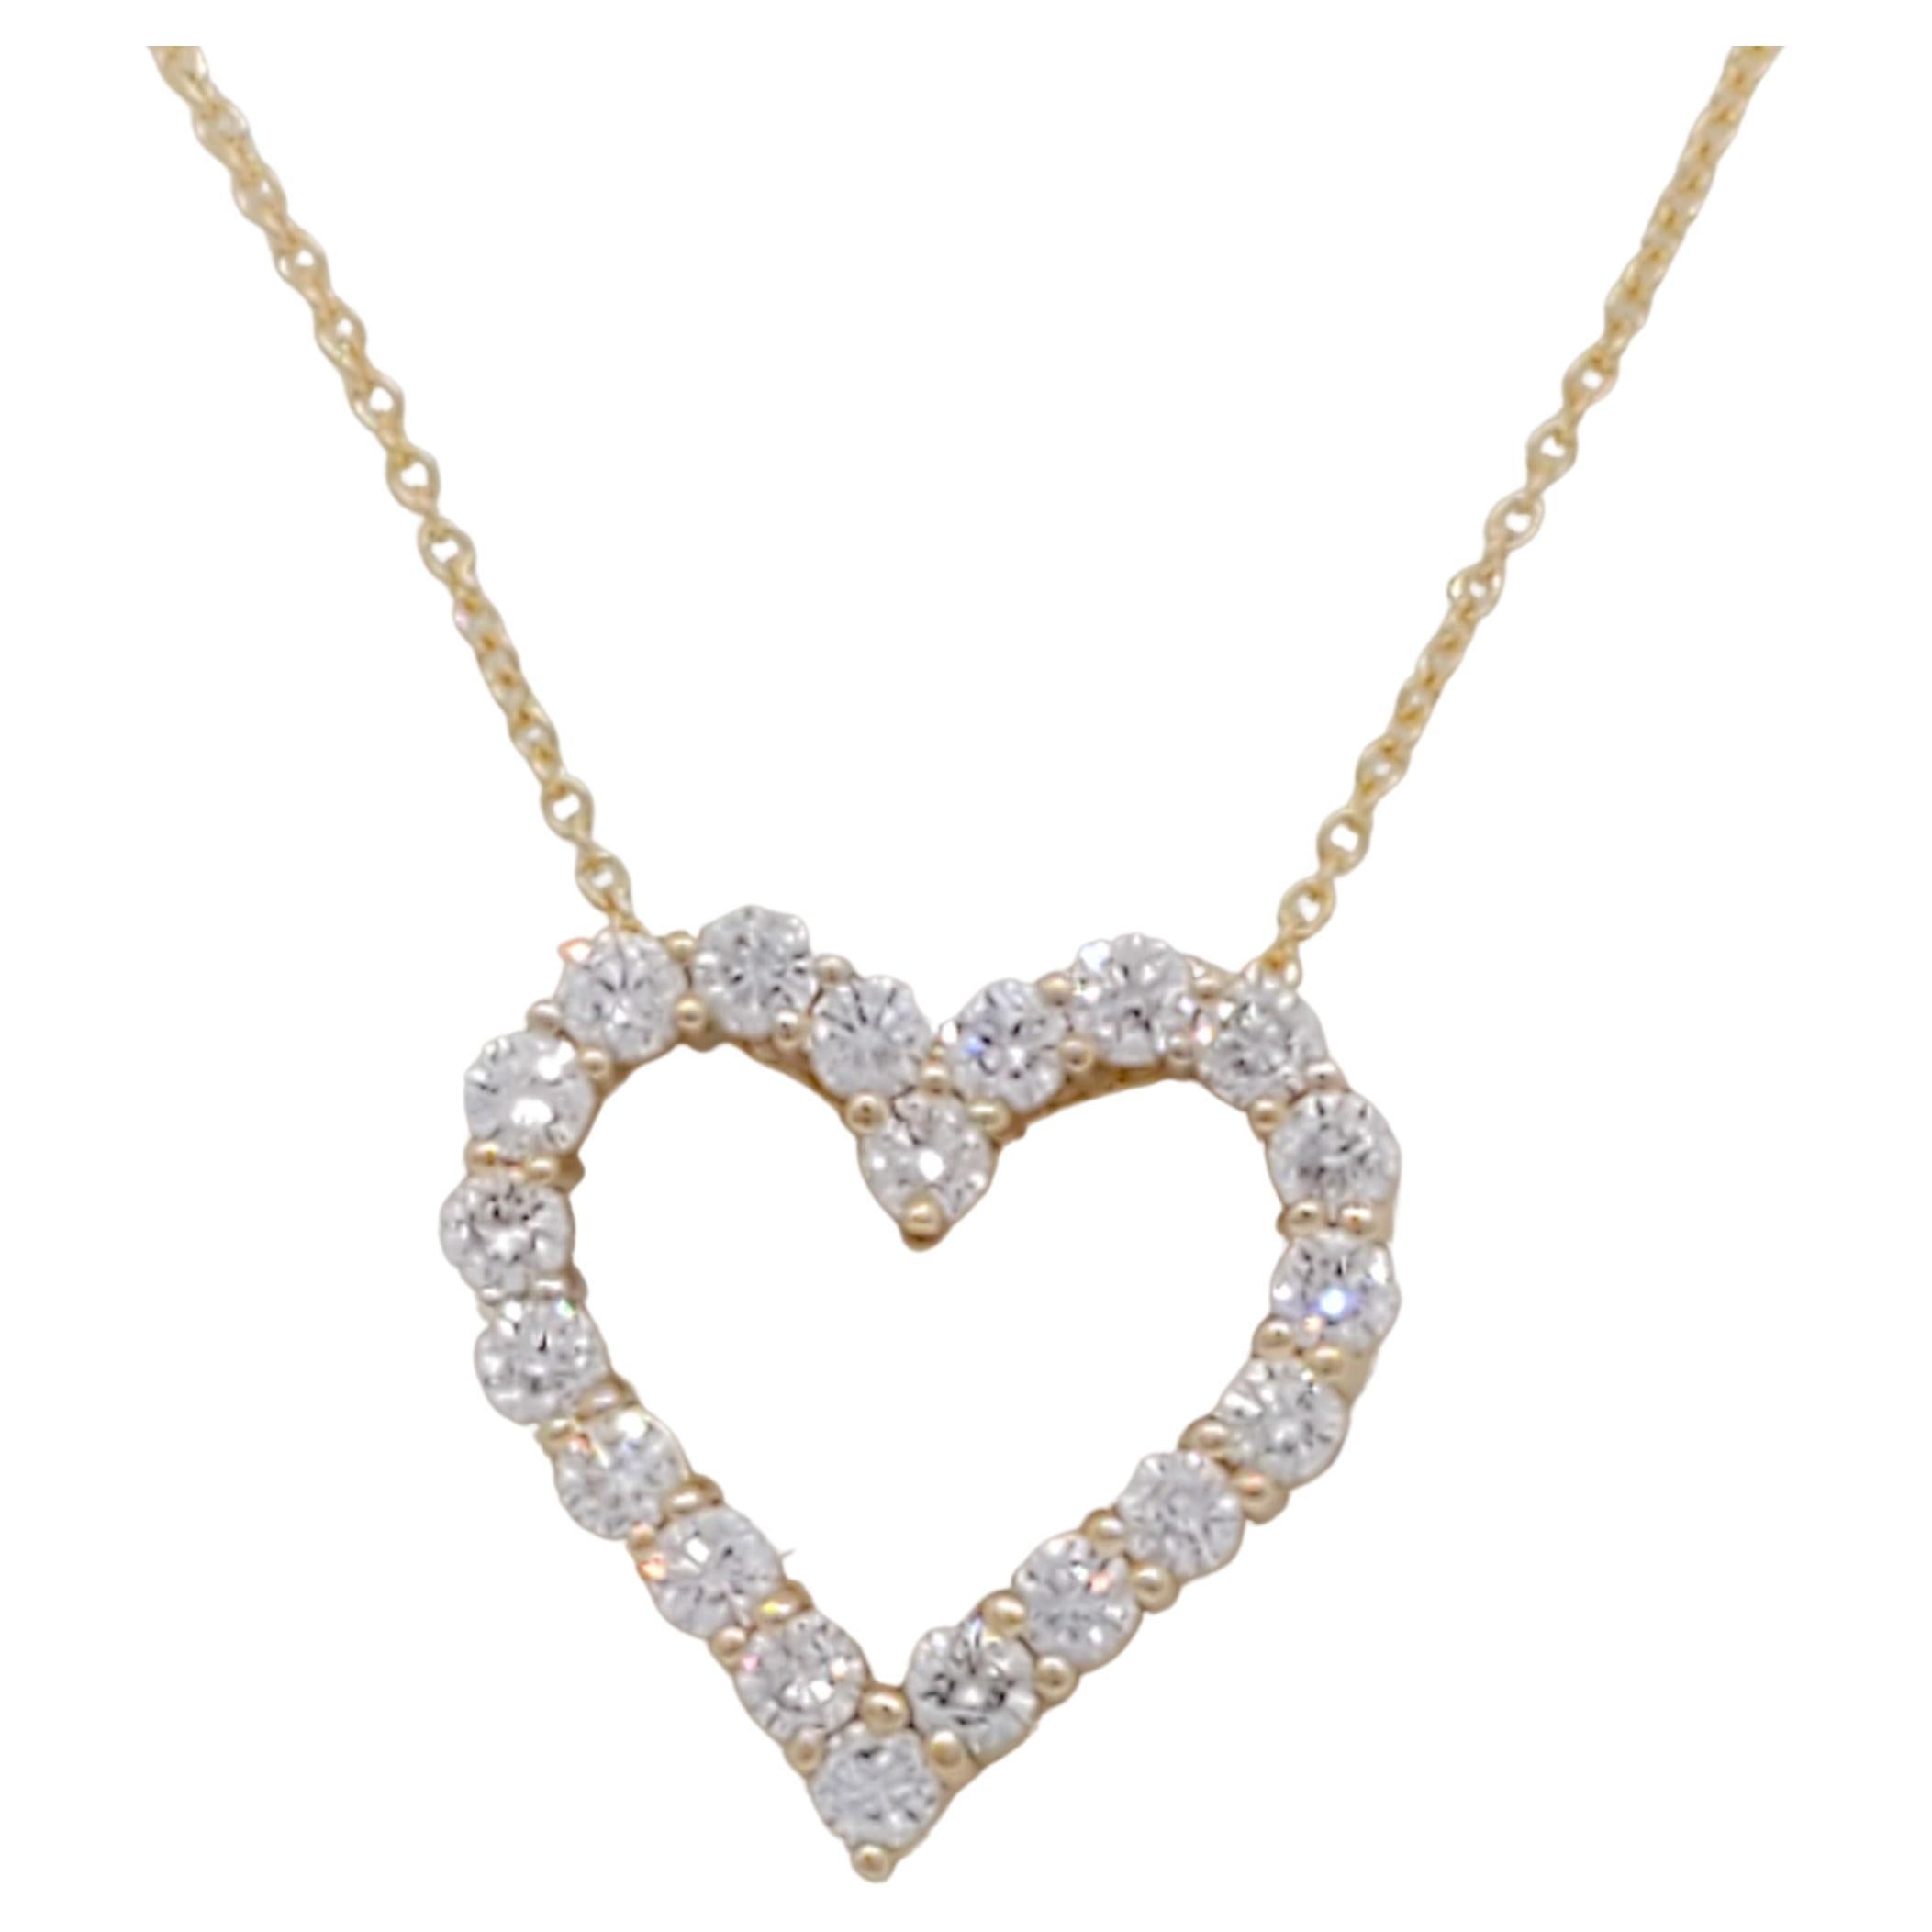 Halskette mit rundem offenem Herzanhänger aus 14k Gelbgold mit weißem Diamanten